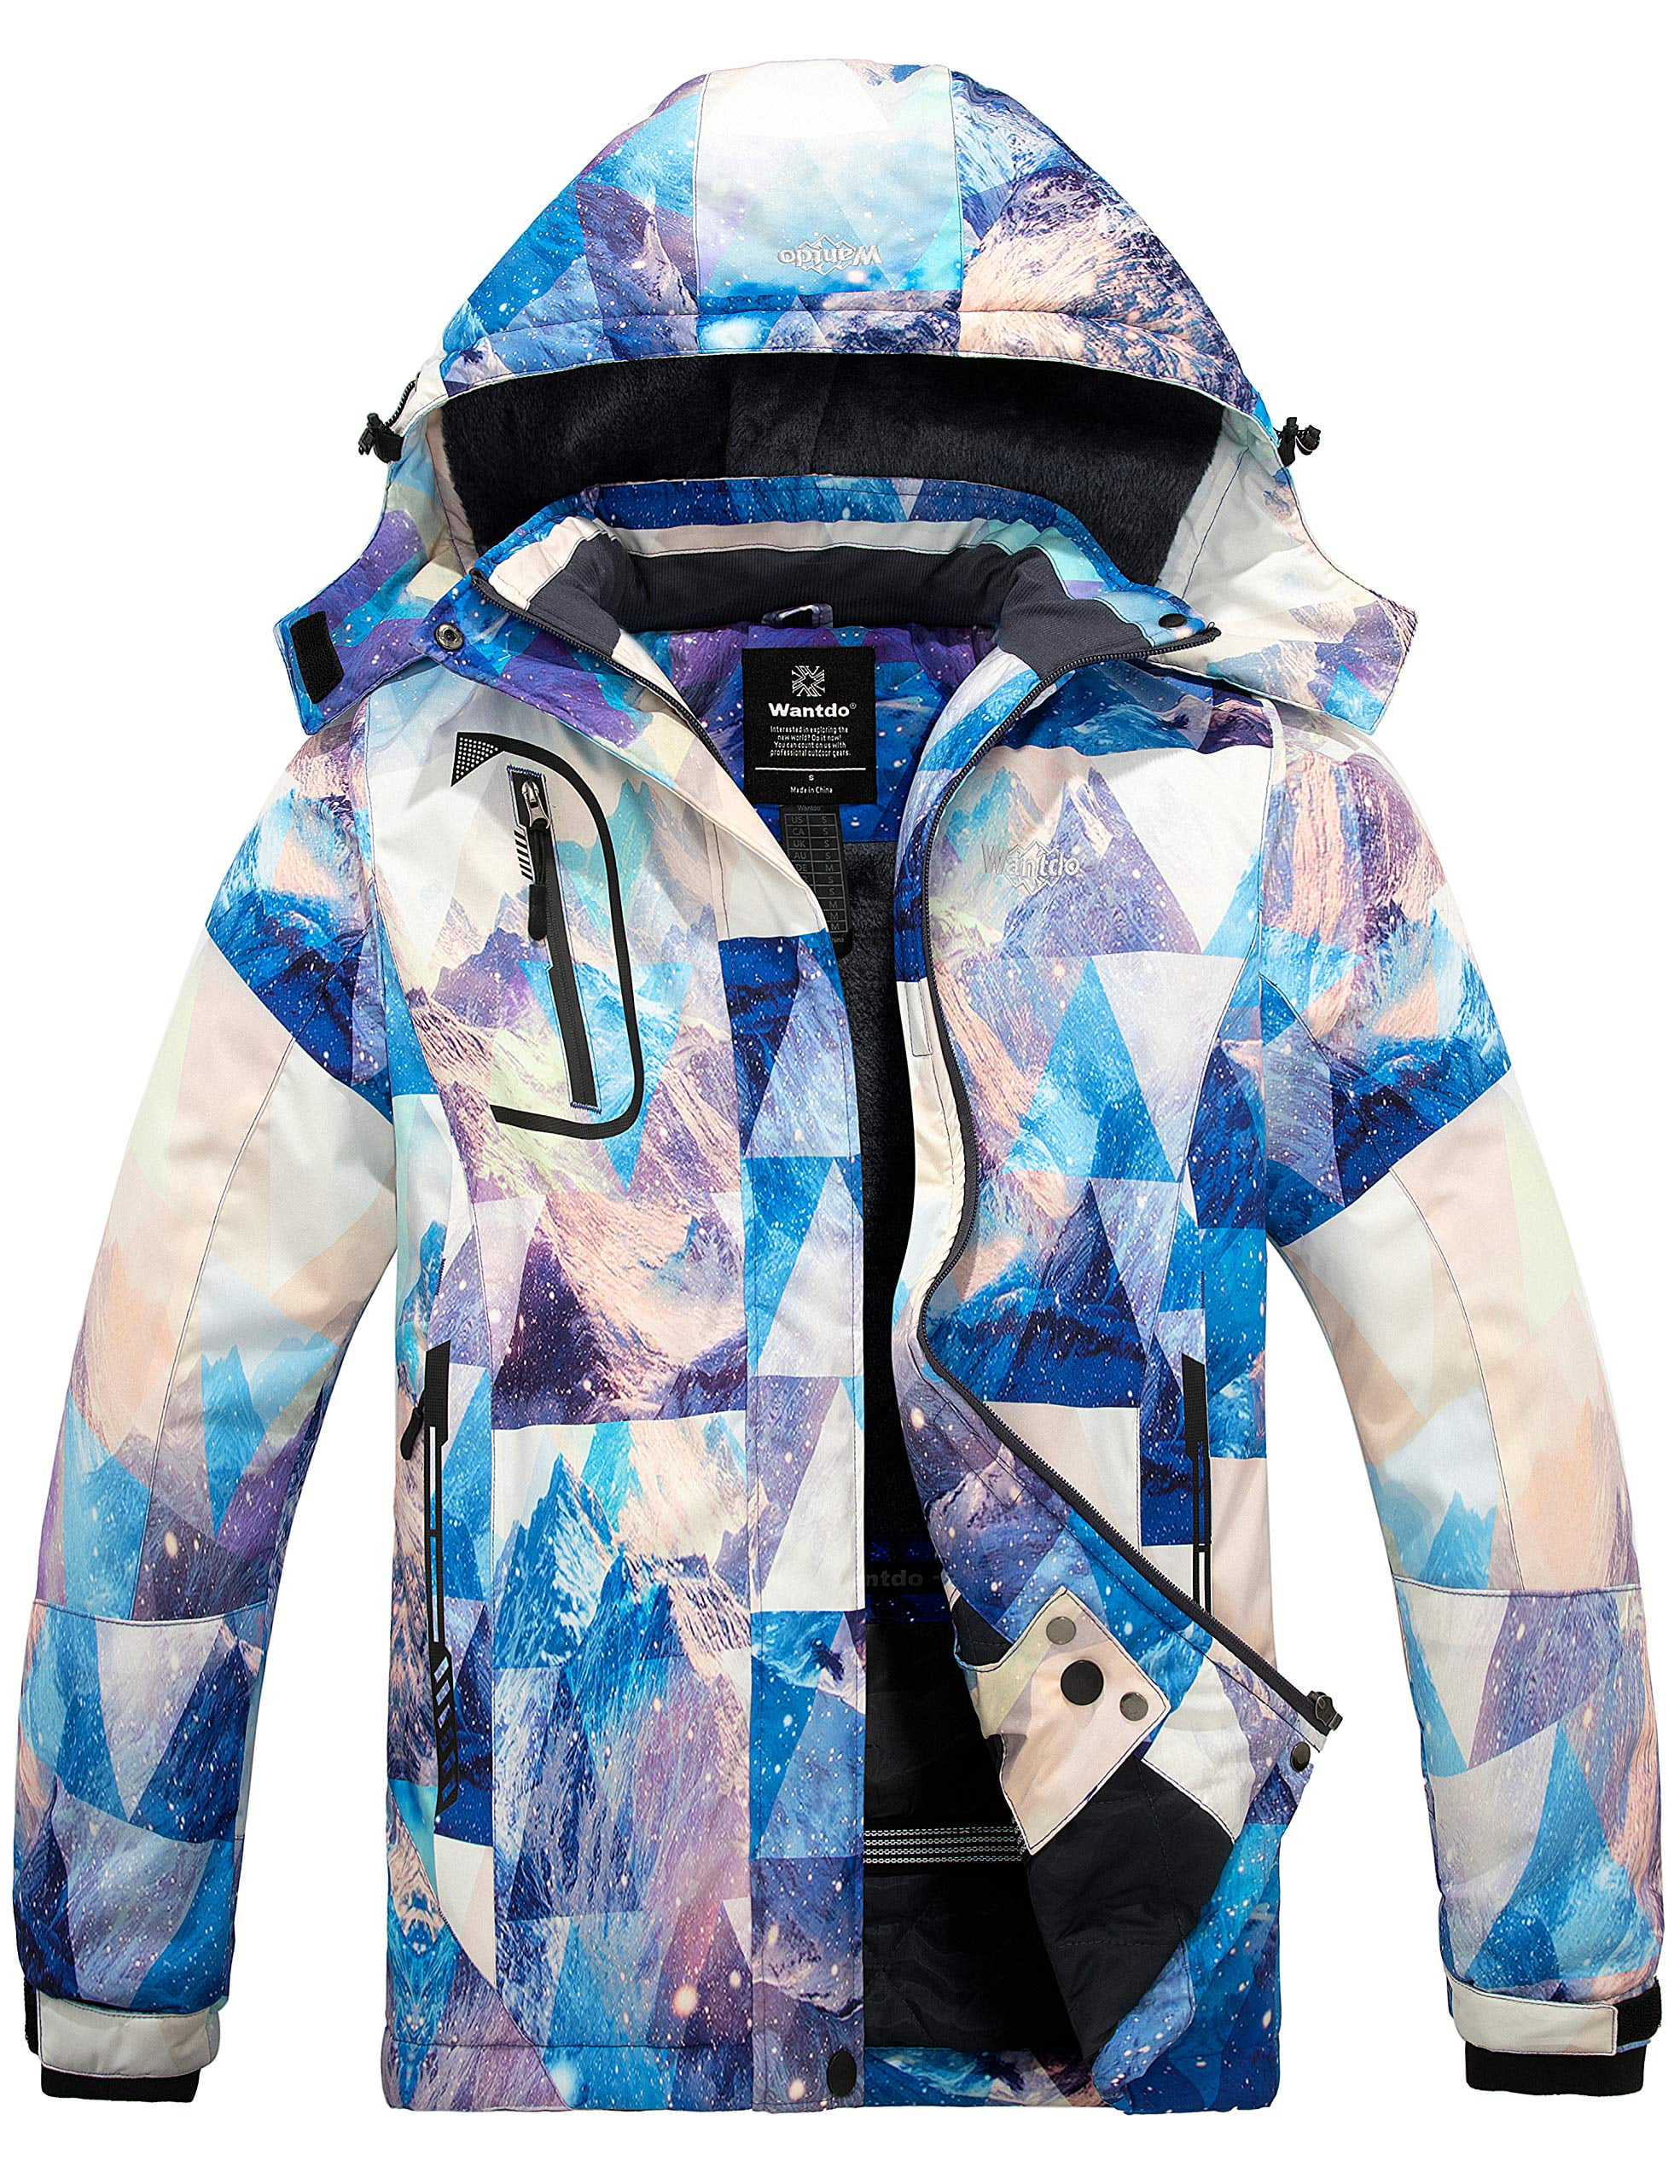 Wantdo Women's Mountain Waterproof Ski Jacket Hooded Winter Snow Coat Insulated Parka Fleece Rain Jacket 